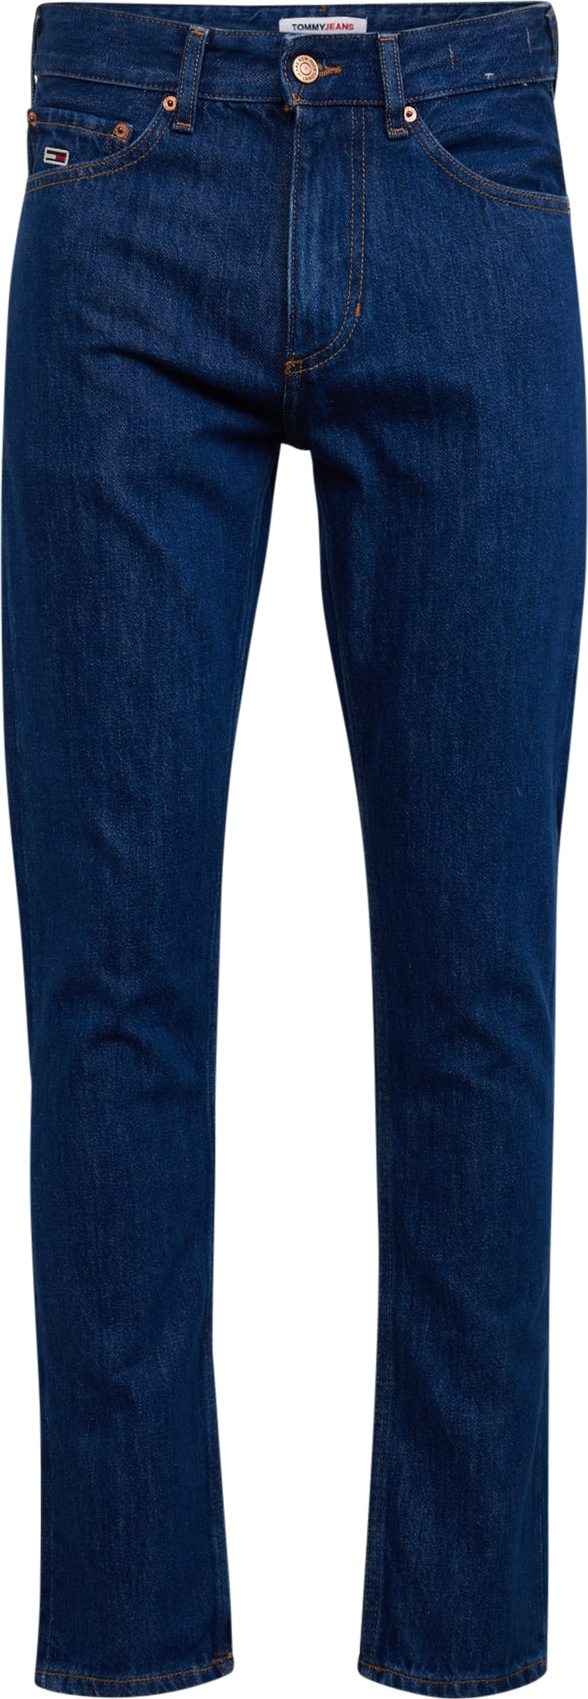 Džíny 'Scanton Y' Tommy Jeans modrá